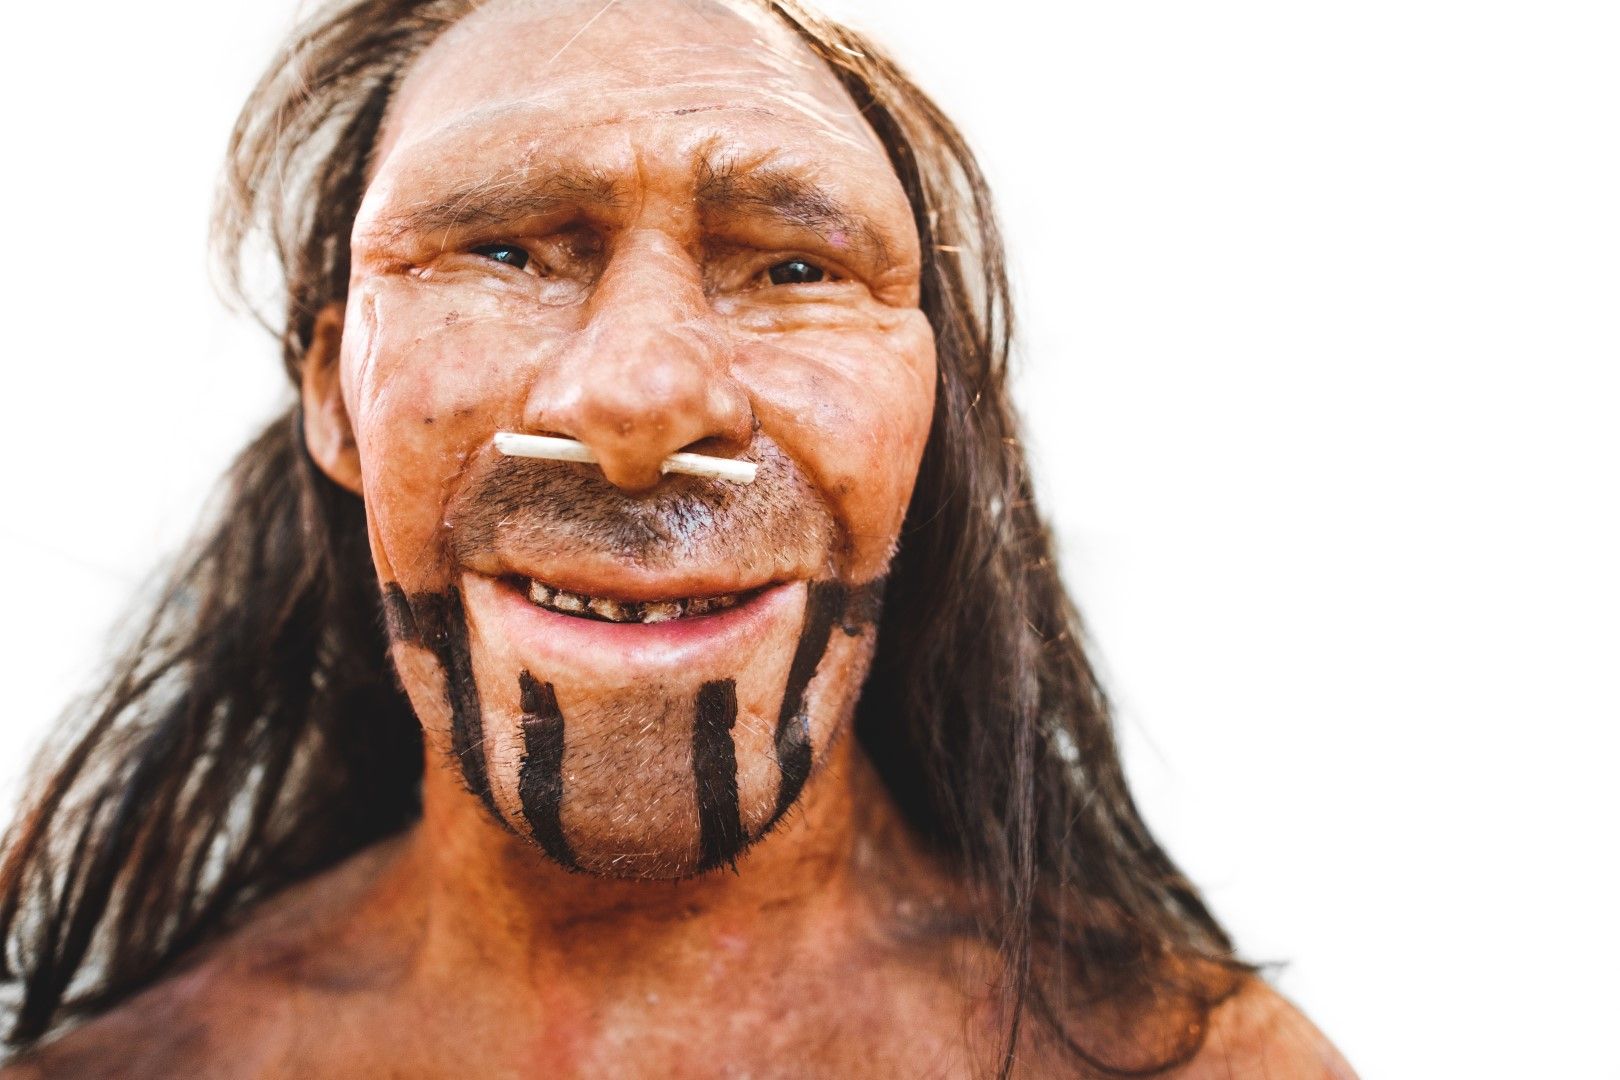 Според повечето учени, по интелектуални способности неандерталците не са отстъпвали на Кроманьонците (нашите предци от вида Сапиенс)